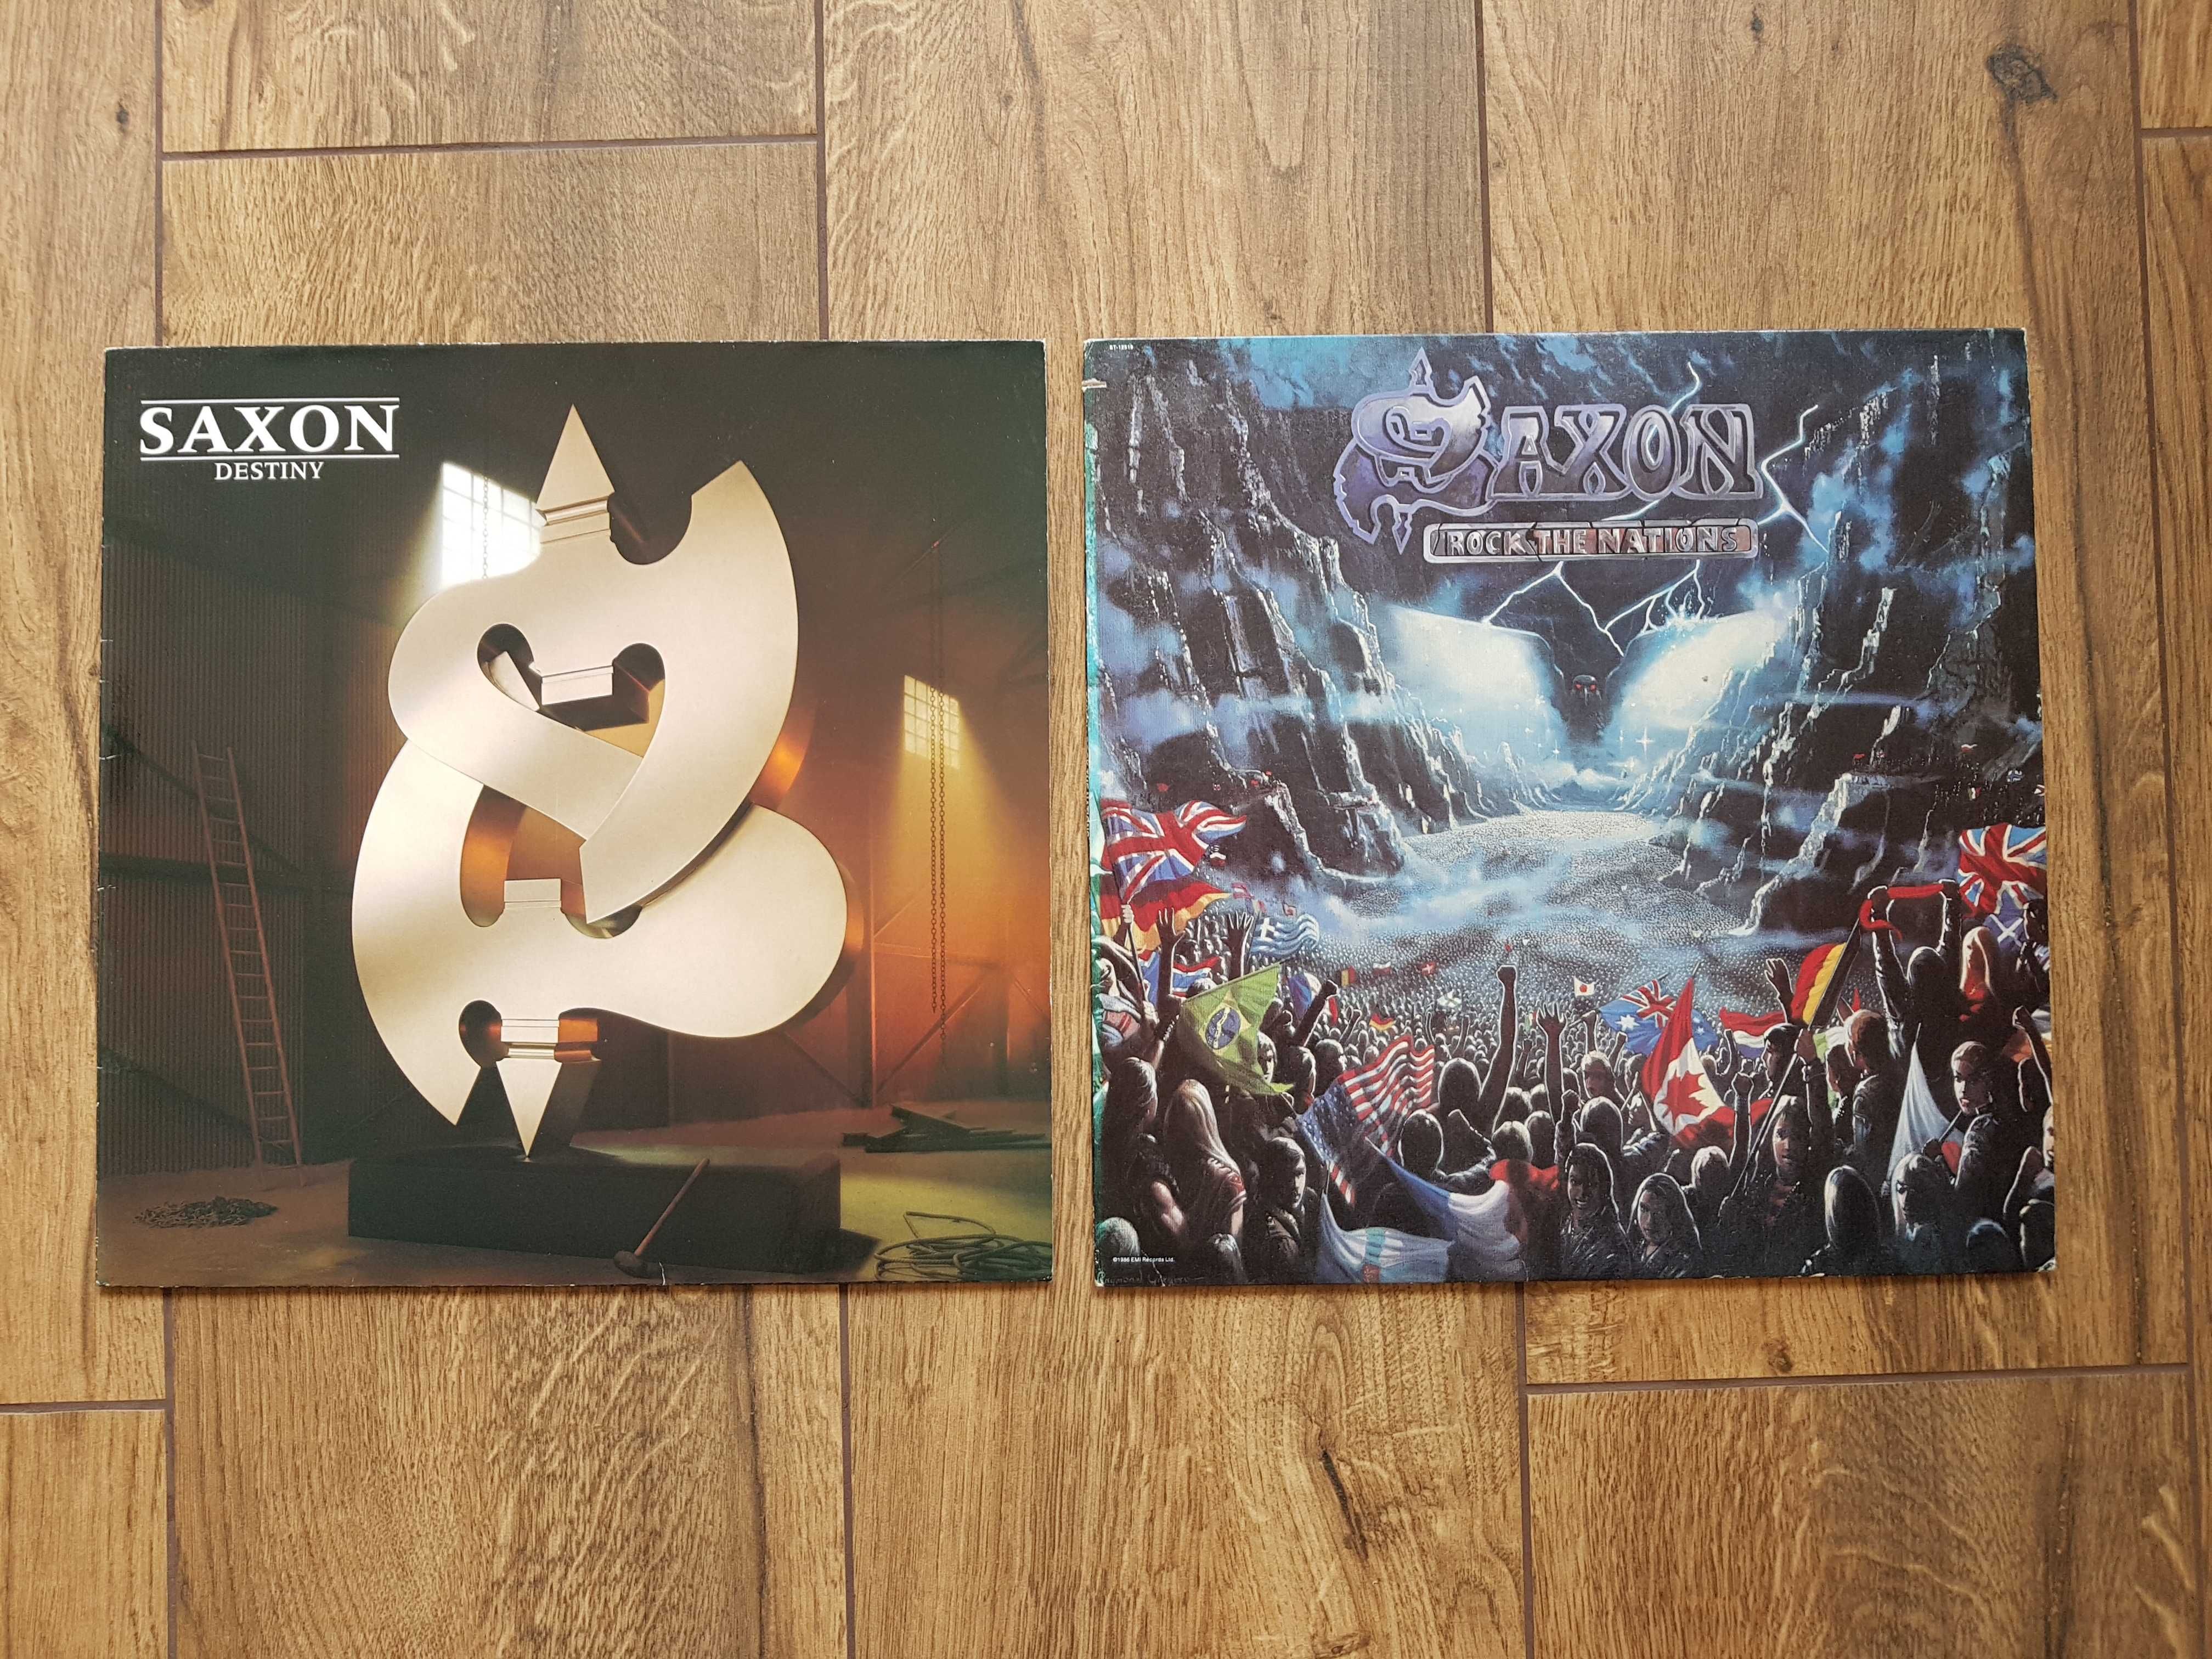 płyty winylowe: SAXON- Rock The Nations, Destiny, LP